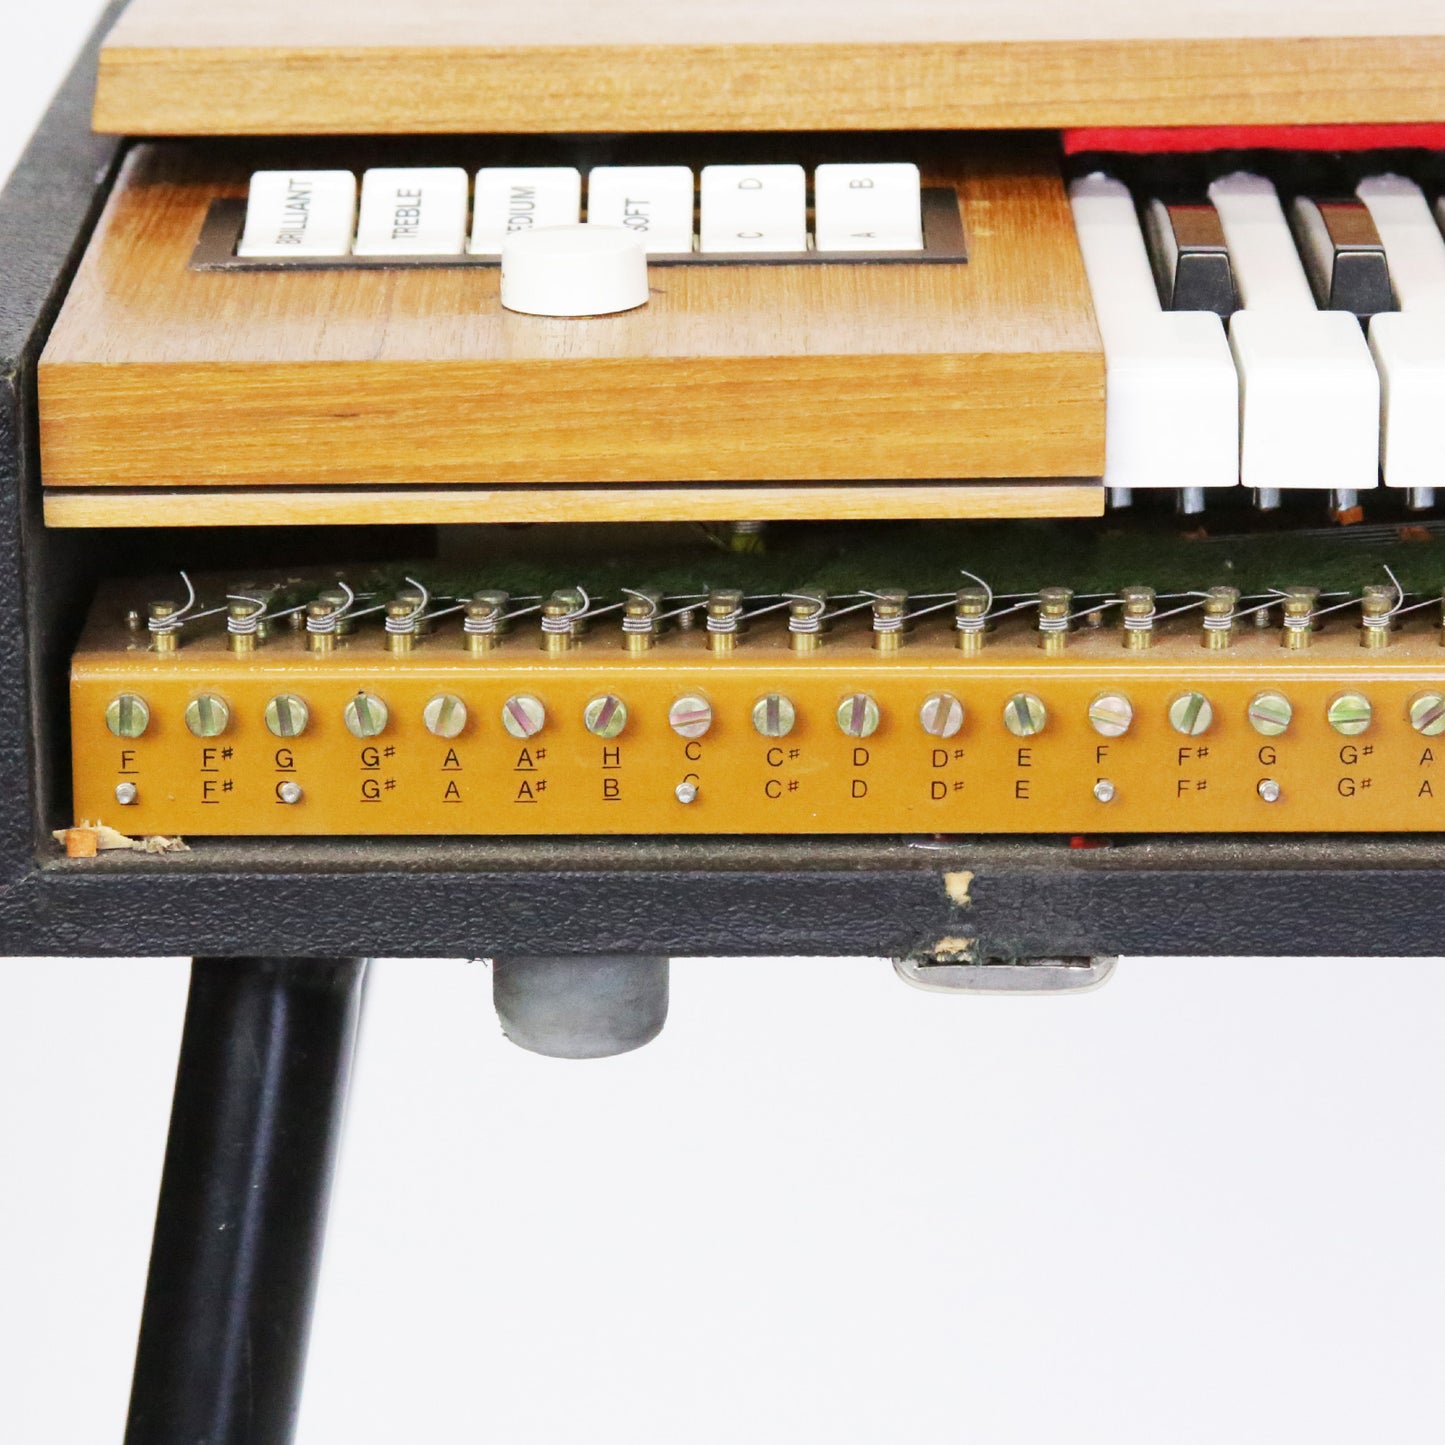 1979 Hohner D6 Clavinet Keyboard - 100% Original Vintage Example